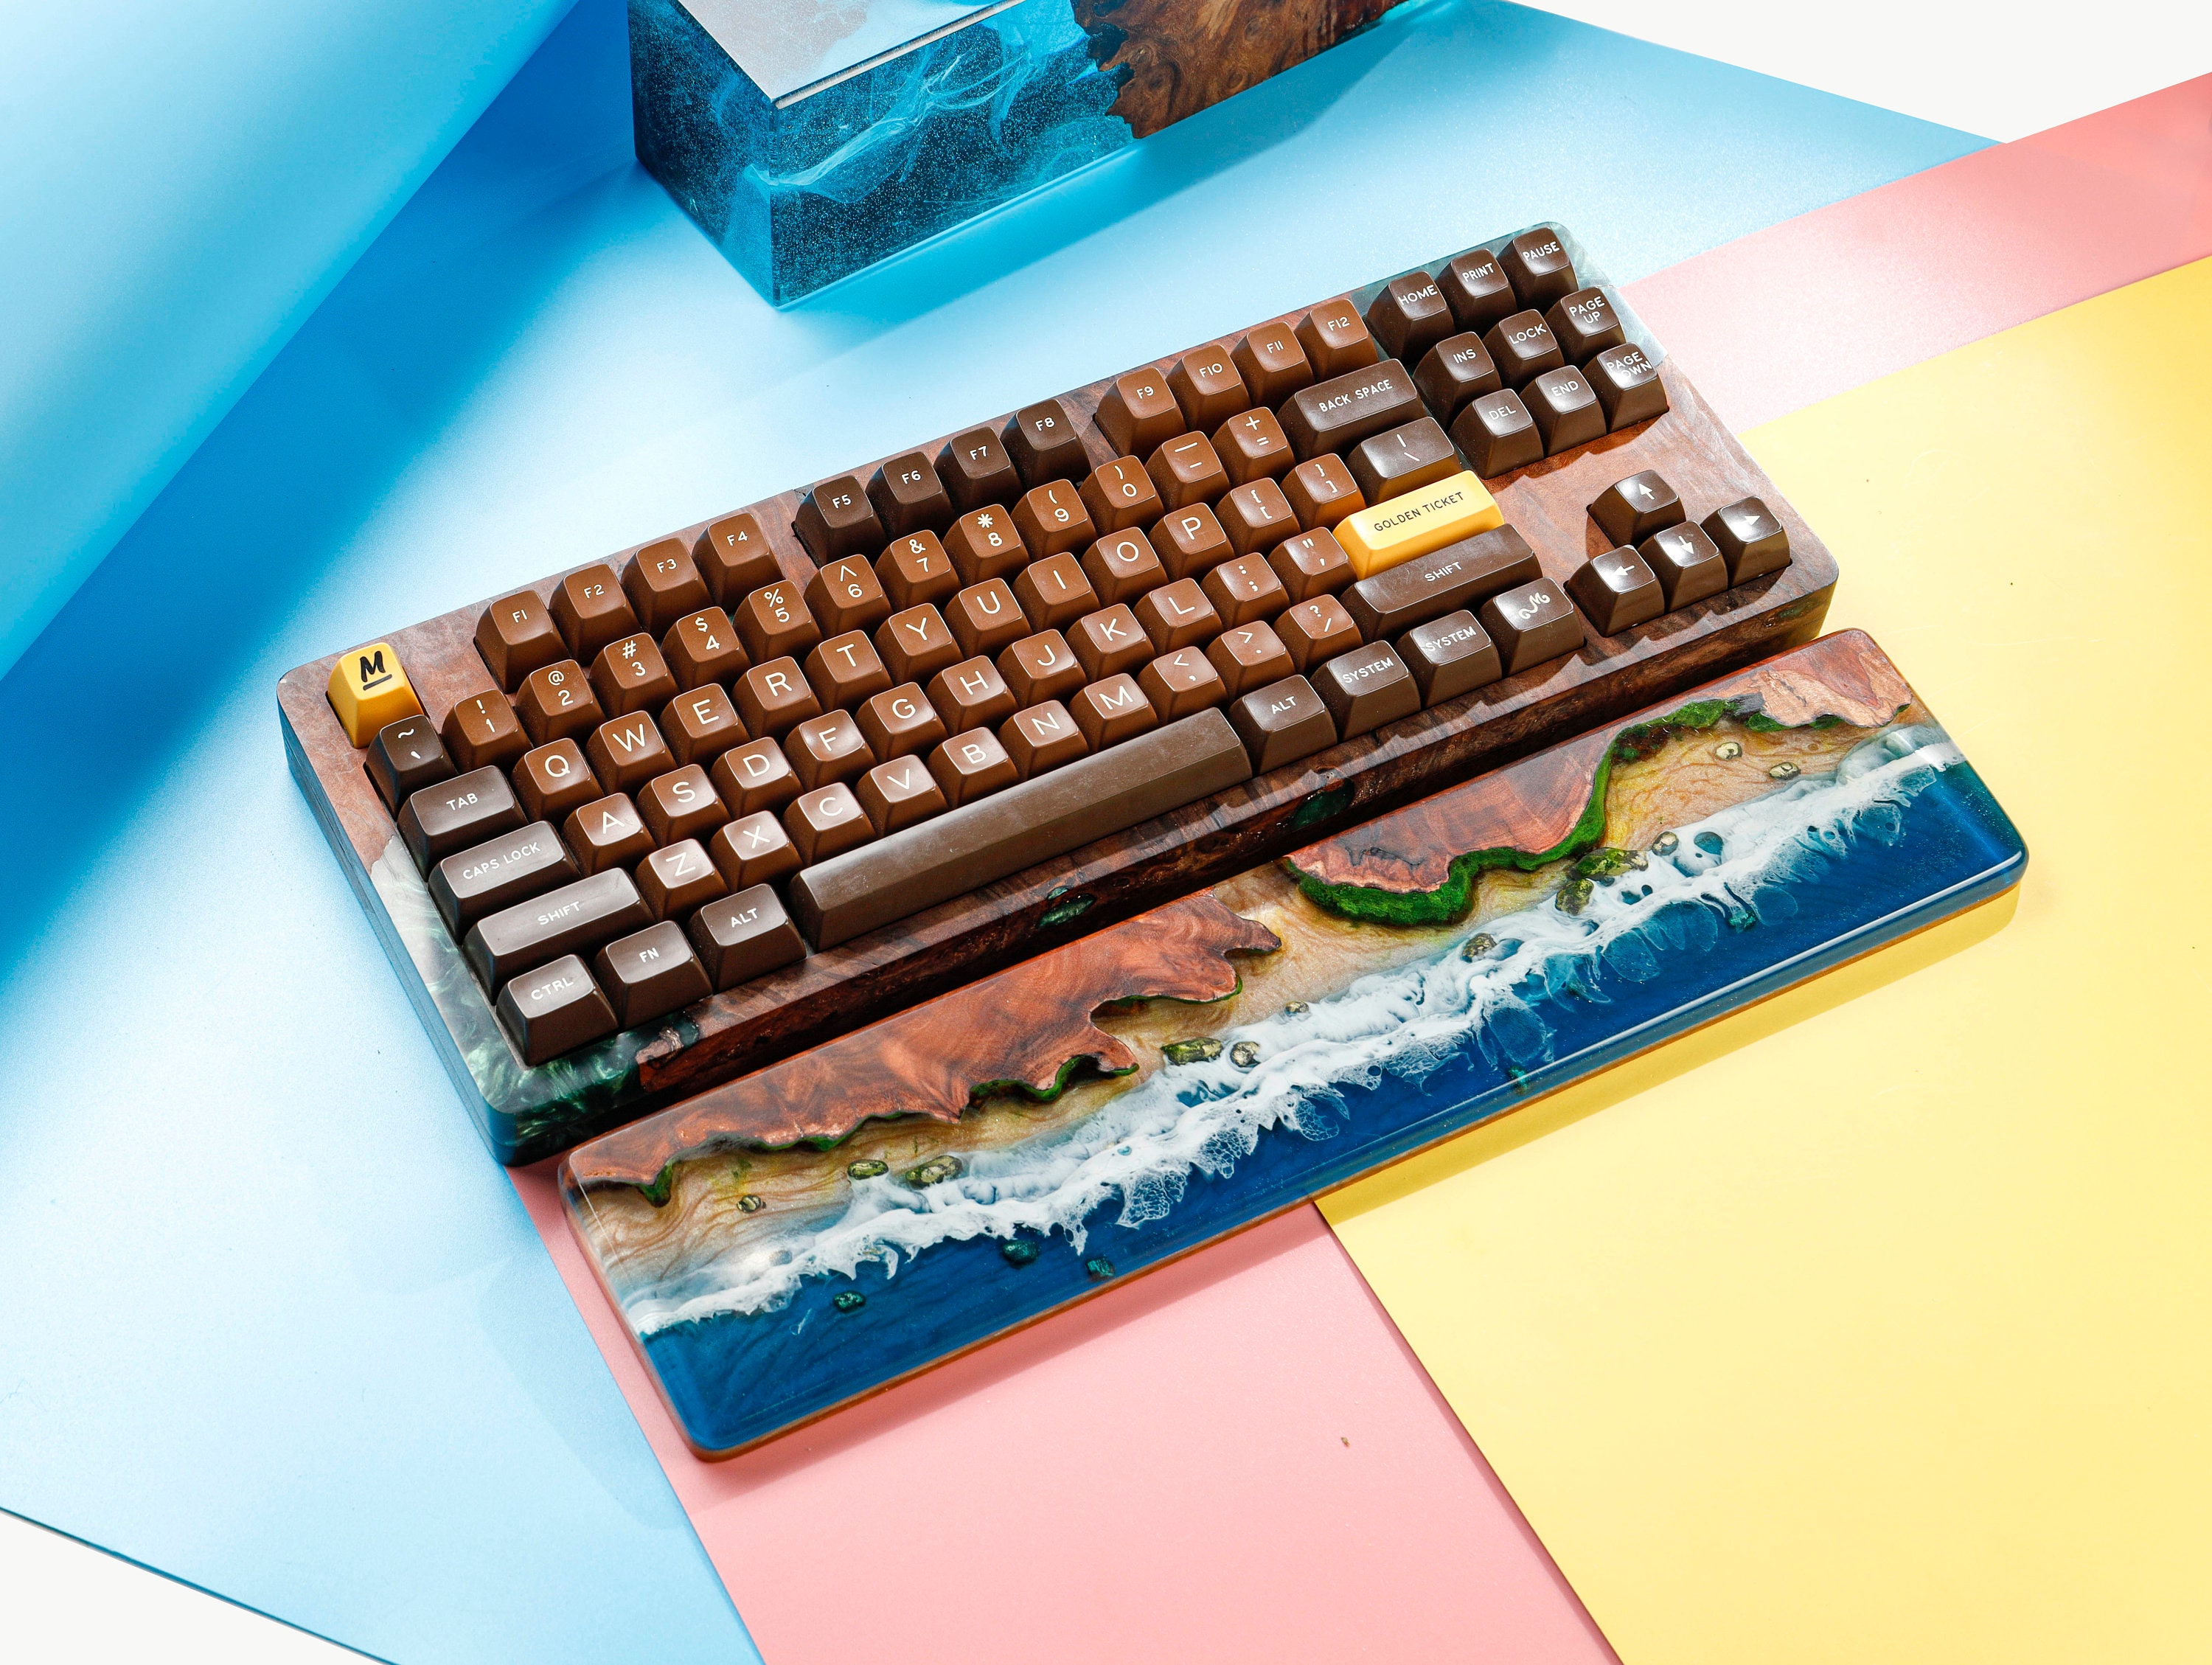 60% Keyboard Wrist Rest – Navy – Turbulent Labs